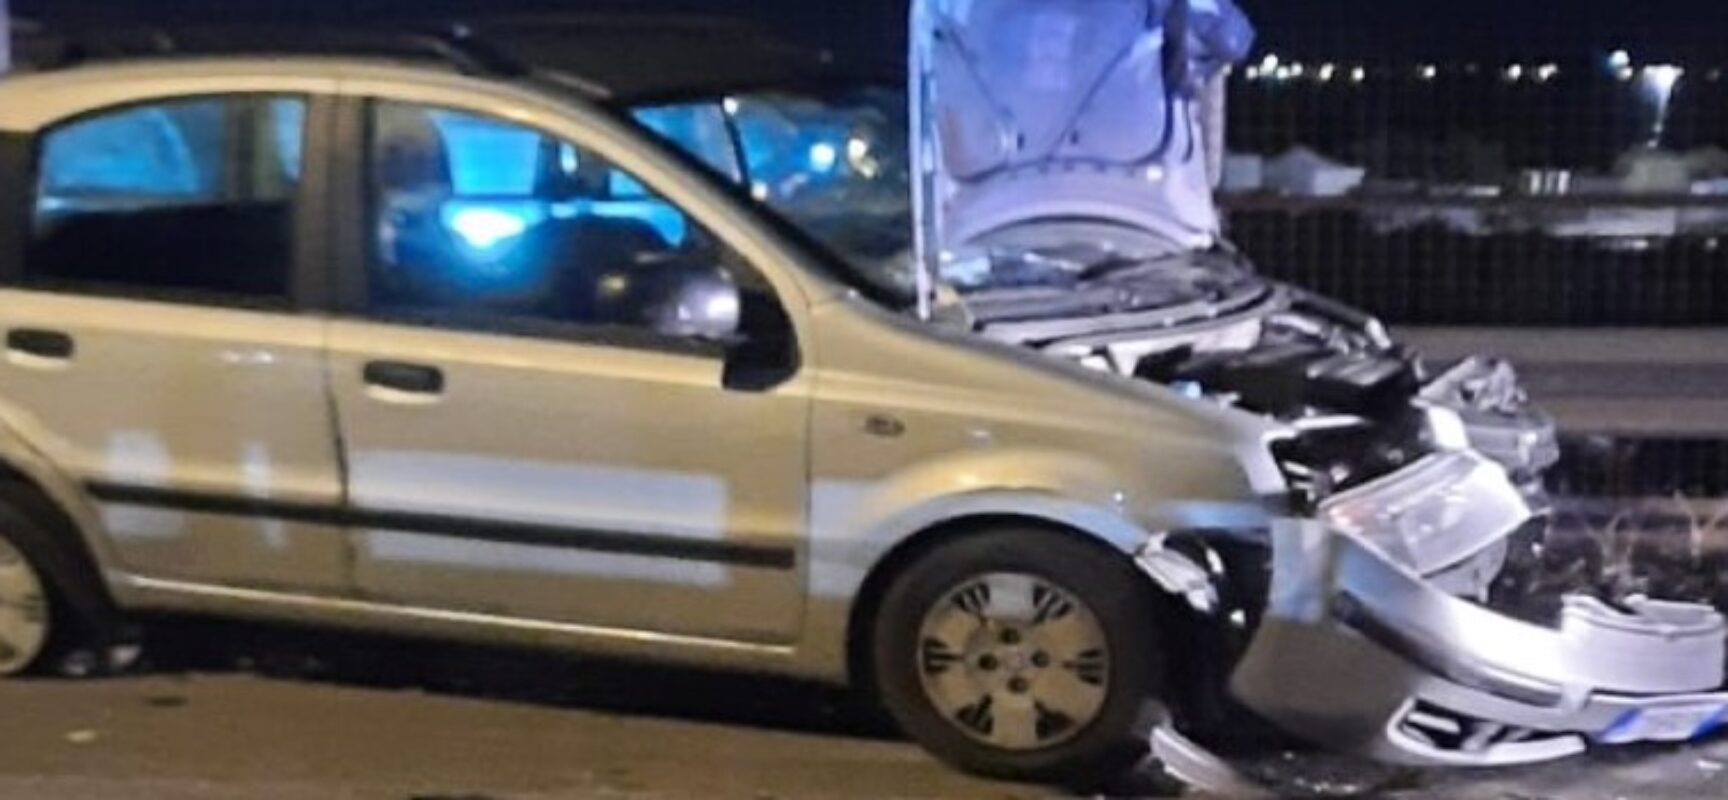 Cronaca: “Ragazzi coinvolti in incidente a Bisceglie stanno tutti bene” 